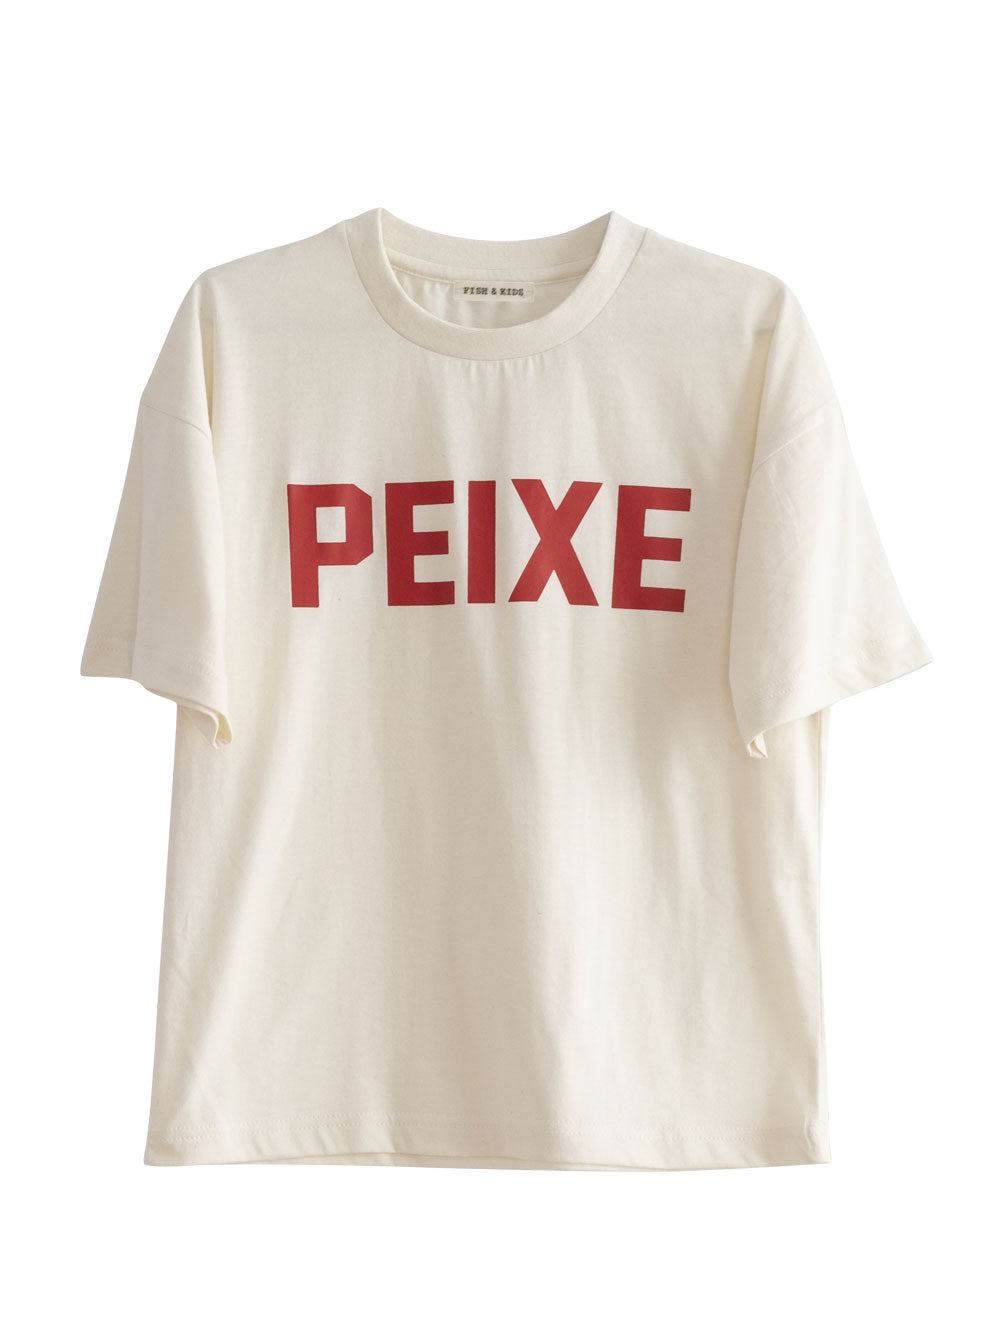 White Peixe T-Shirt